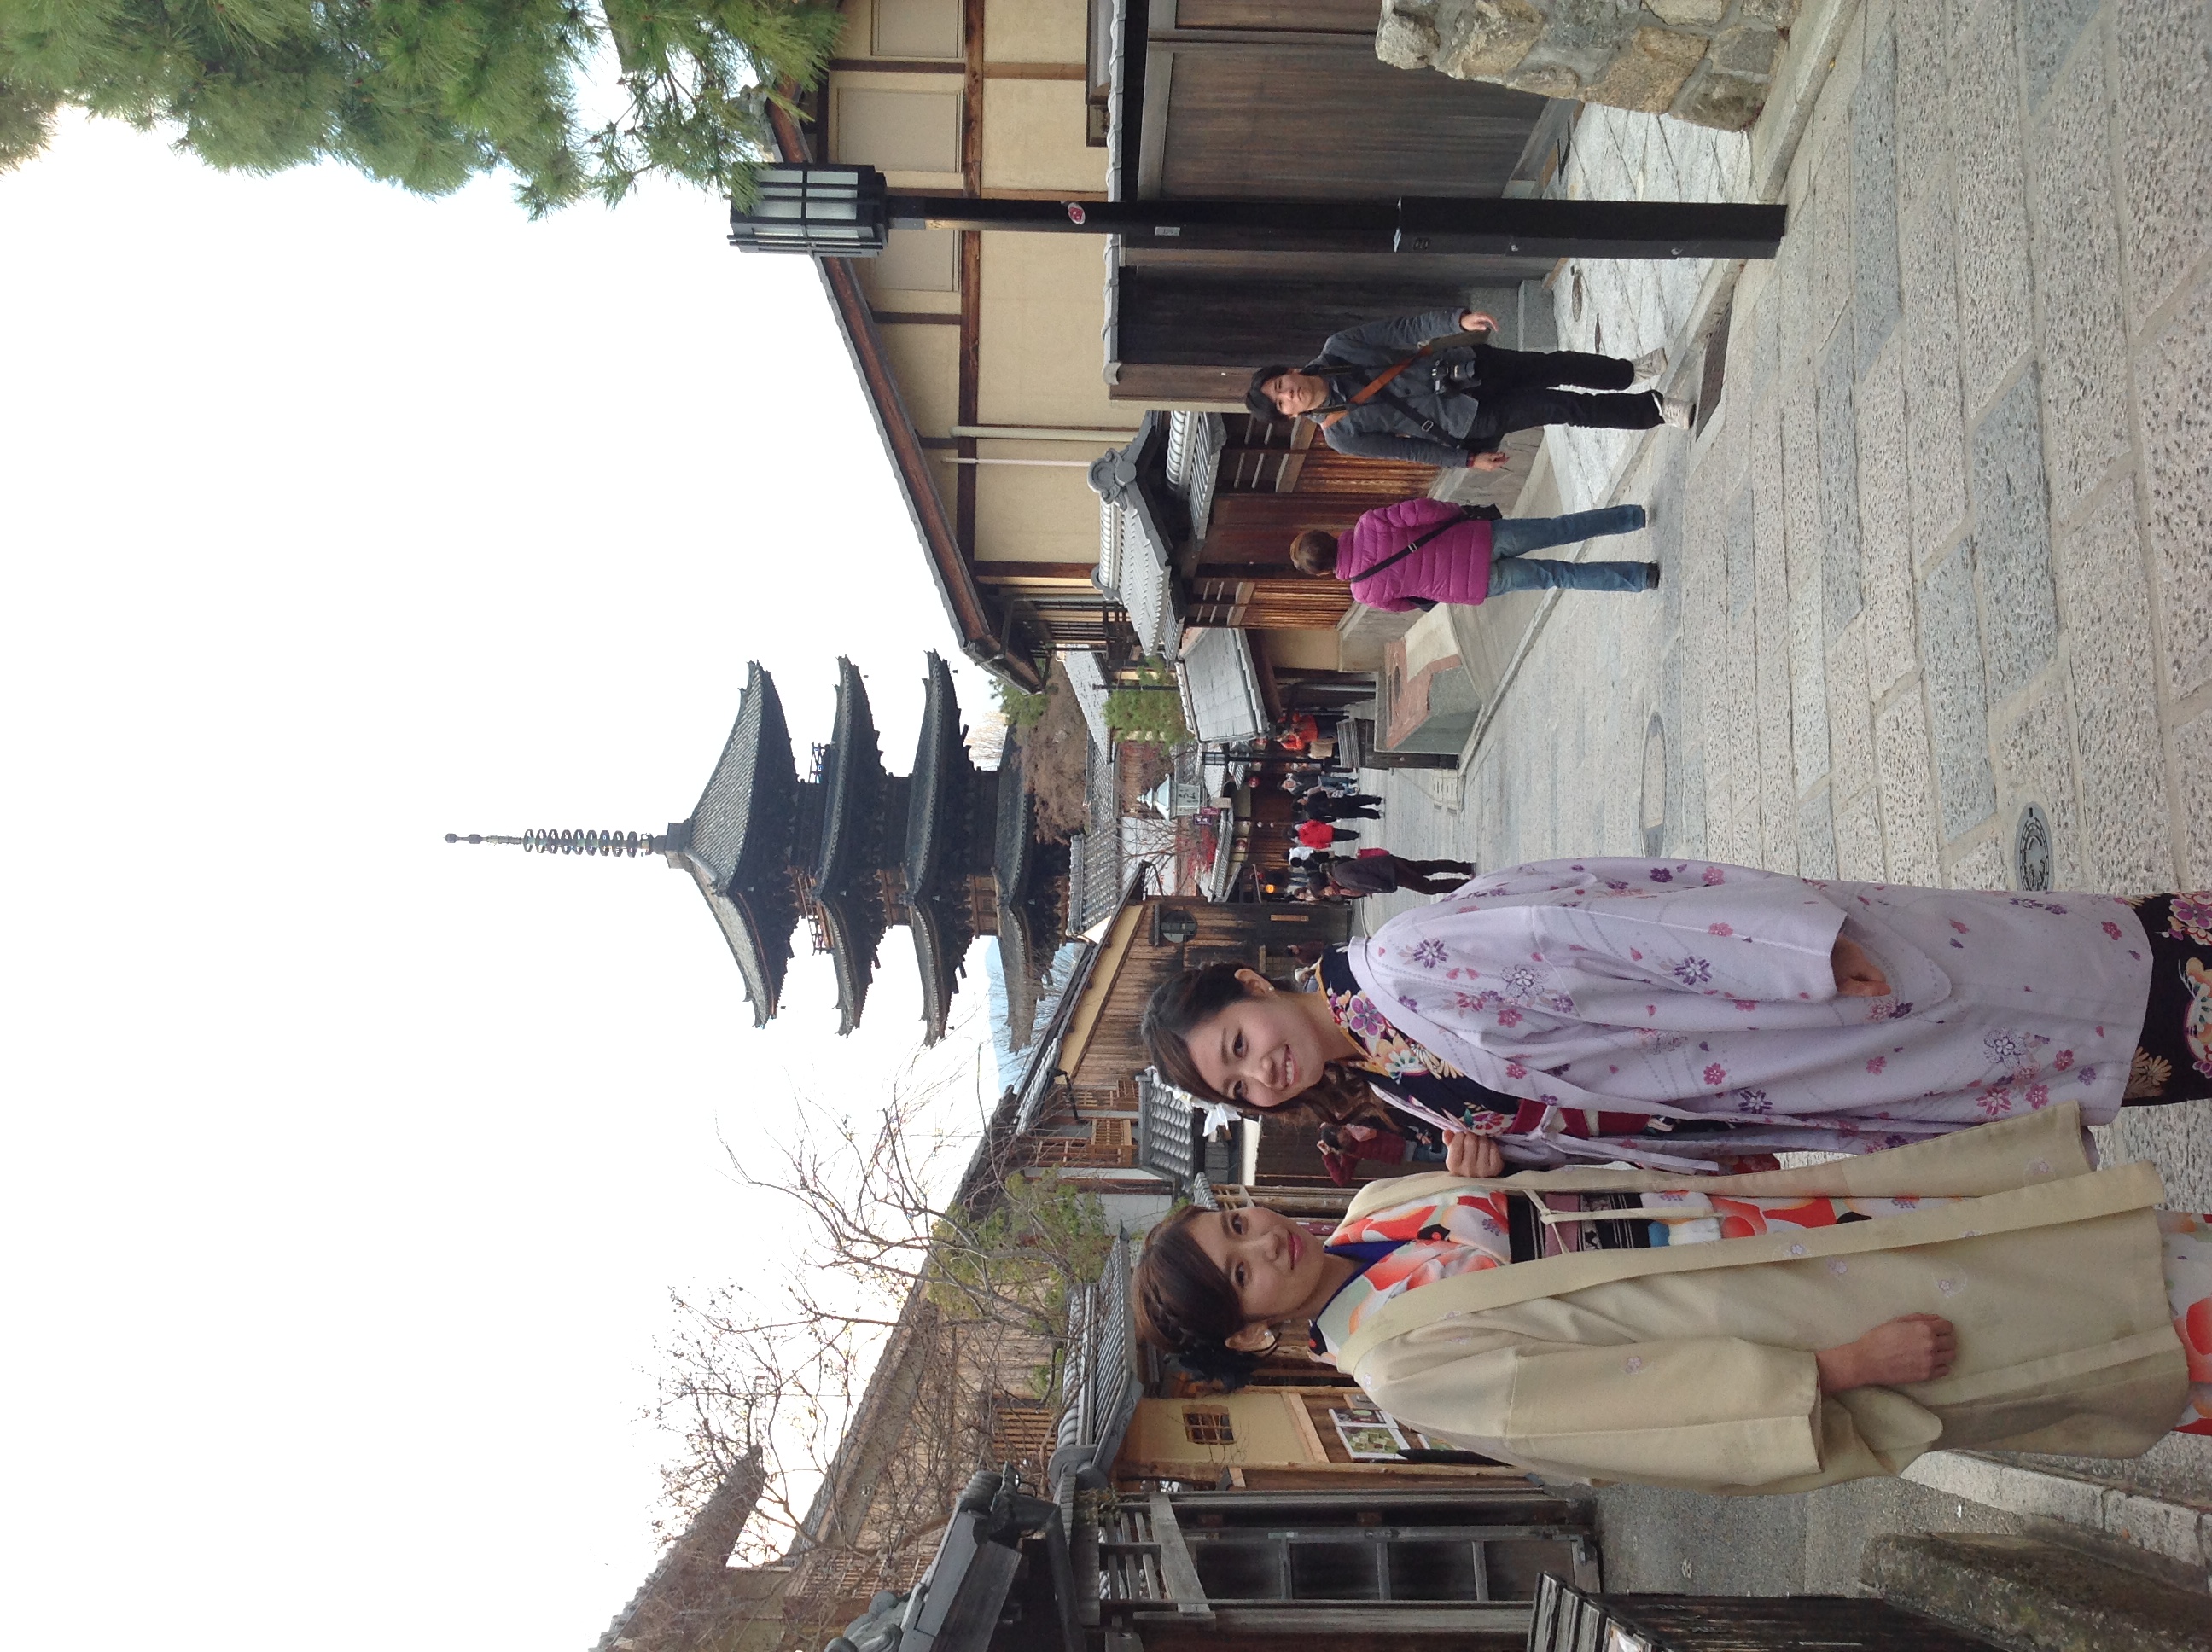  八坂の塔 徒歩7分、映えスポット八坂庚申堂も近くですYasaka pagoda 